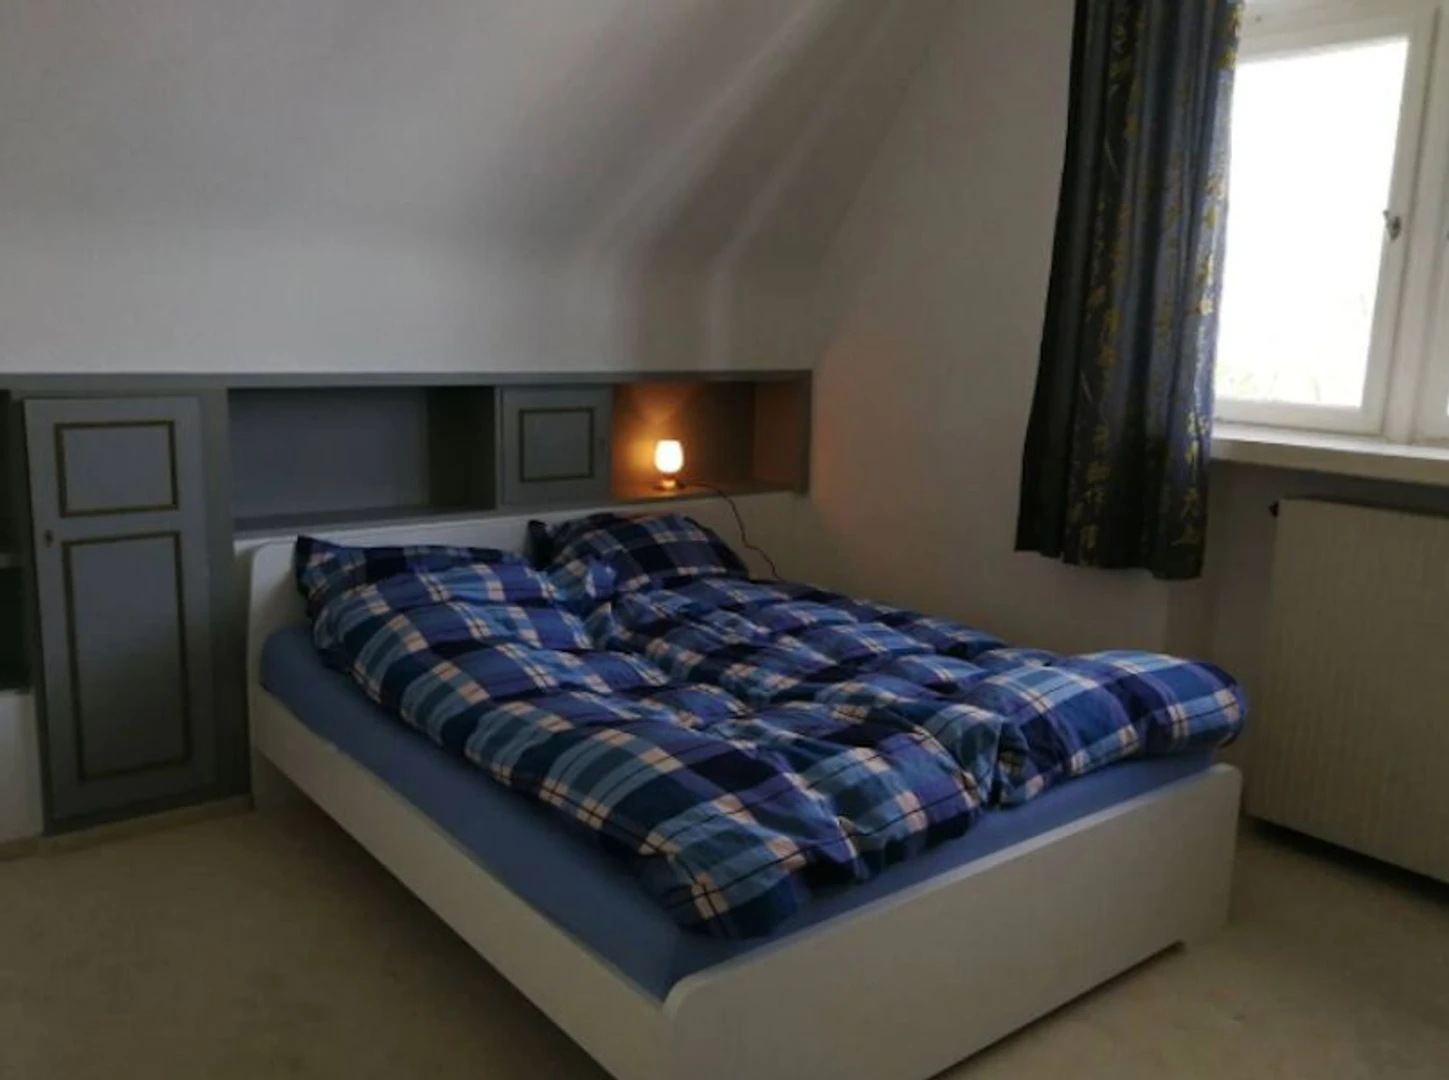 Zimmer mit Doppelbett zu vermieten Bielefeld